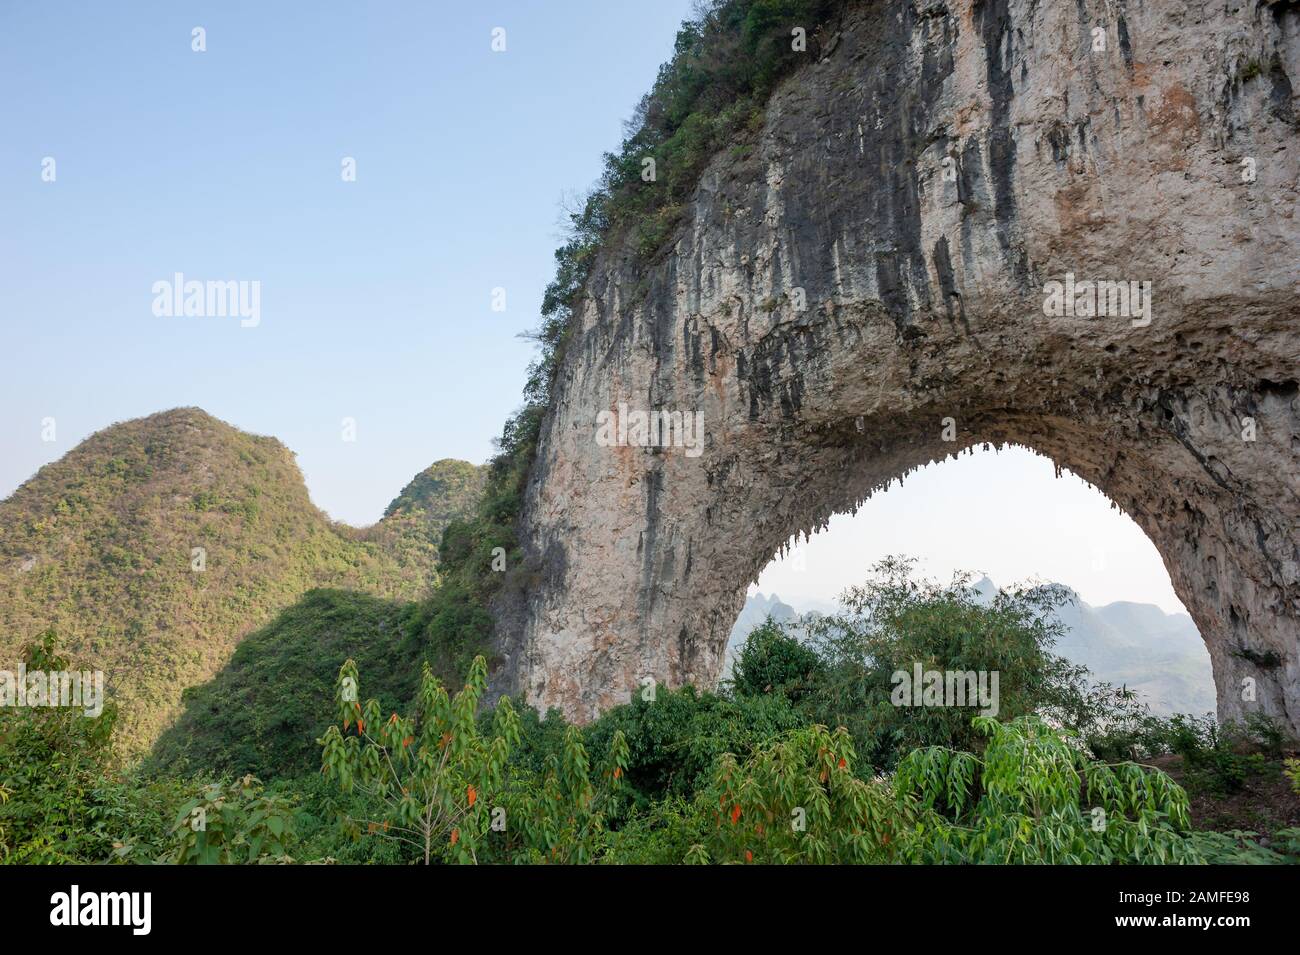 Formation de karst d'arche de colline de Lune à Yangshuo, Guilin, province de Guangxi, Chine Banque D'Images